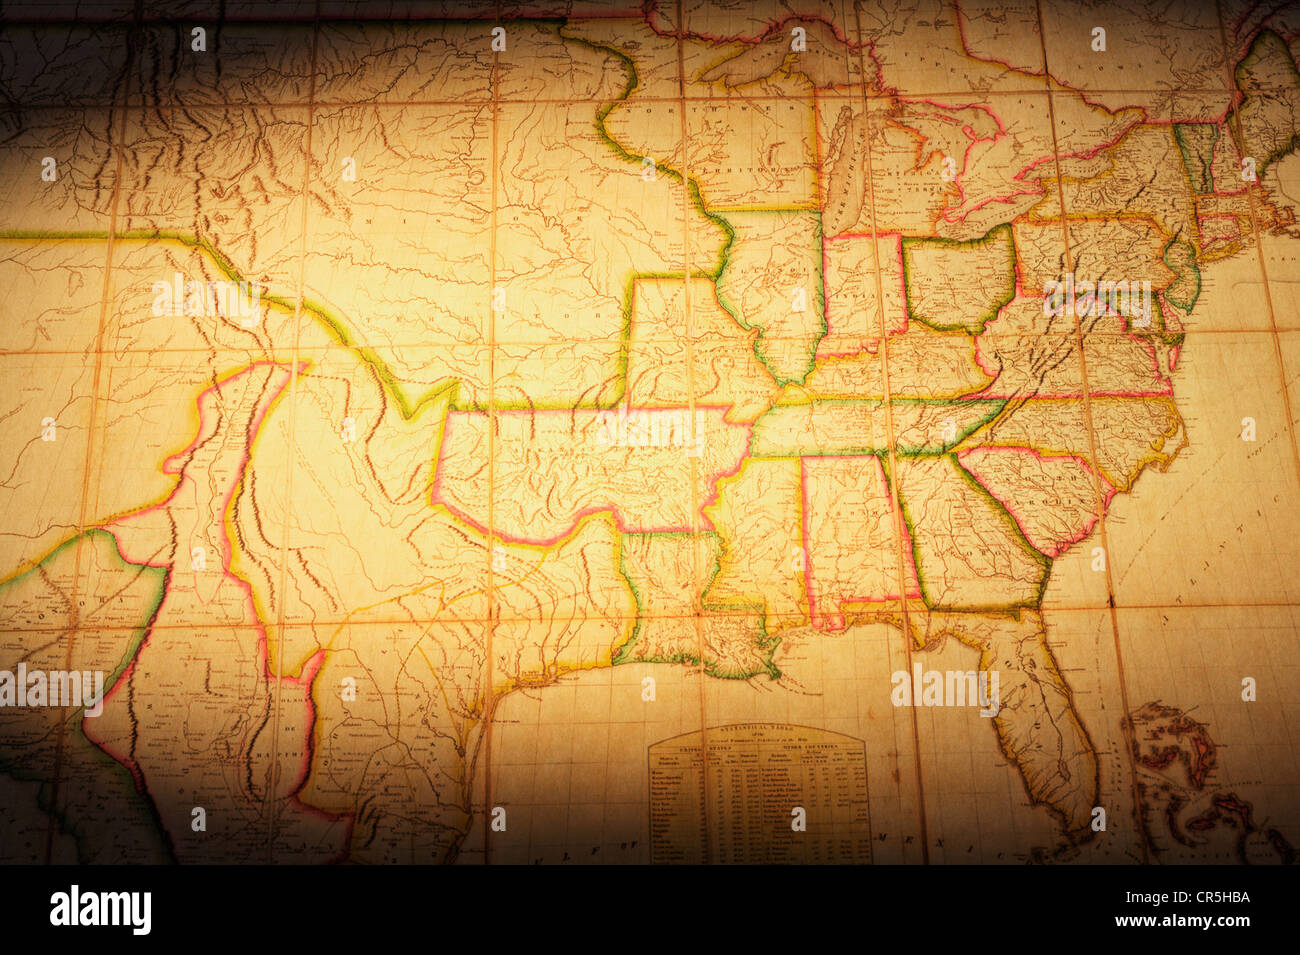 Vintage map della parte degli Stati Uniti. Mappa è dal 1820 ed è al di fuori del diritto d'autore. Focus su 'Missouri territorio'. Foto Stock